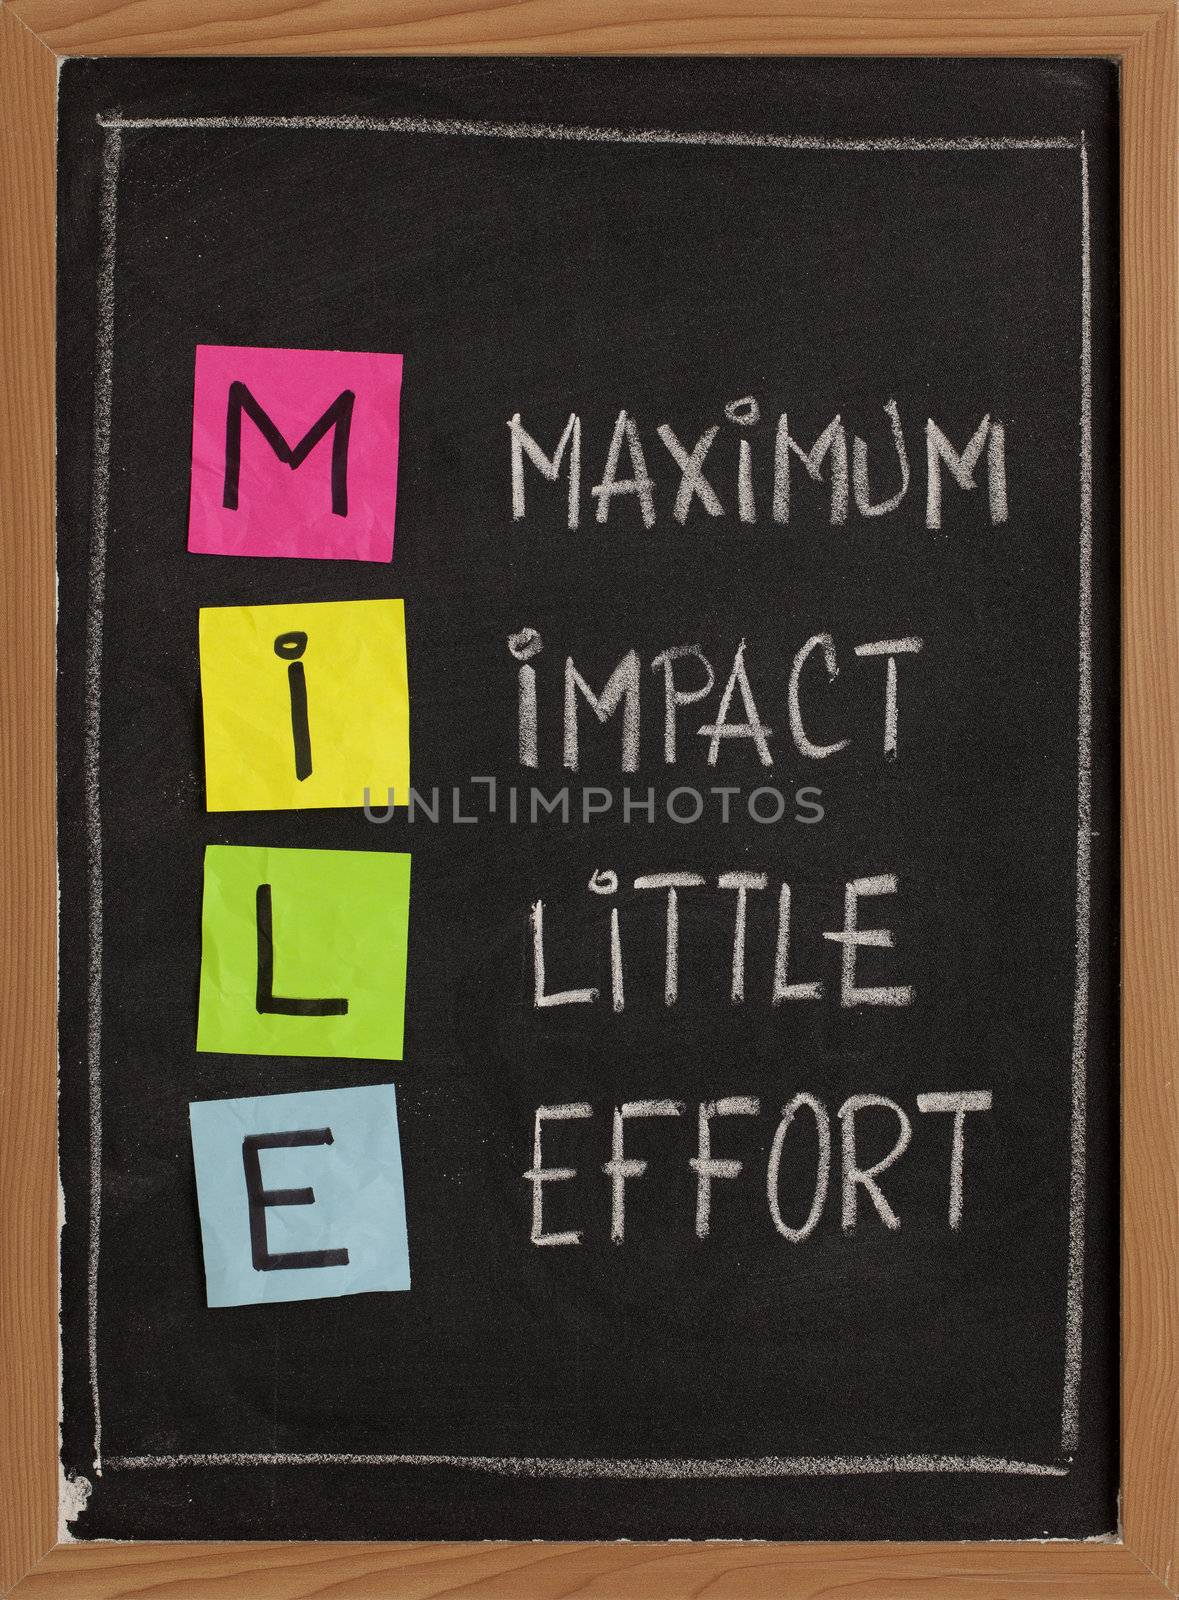 Maximum impact, little effort by PixelsAway